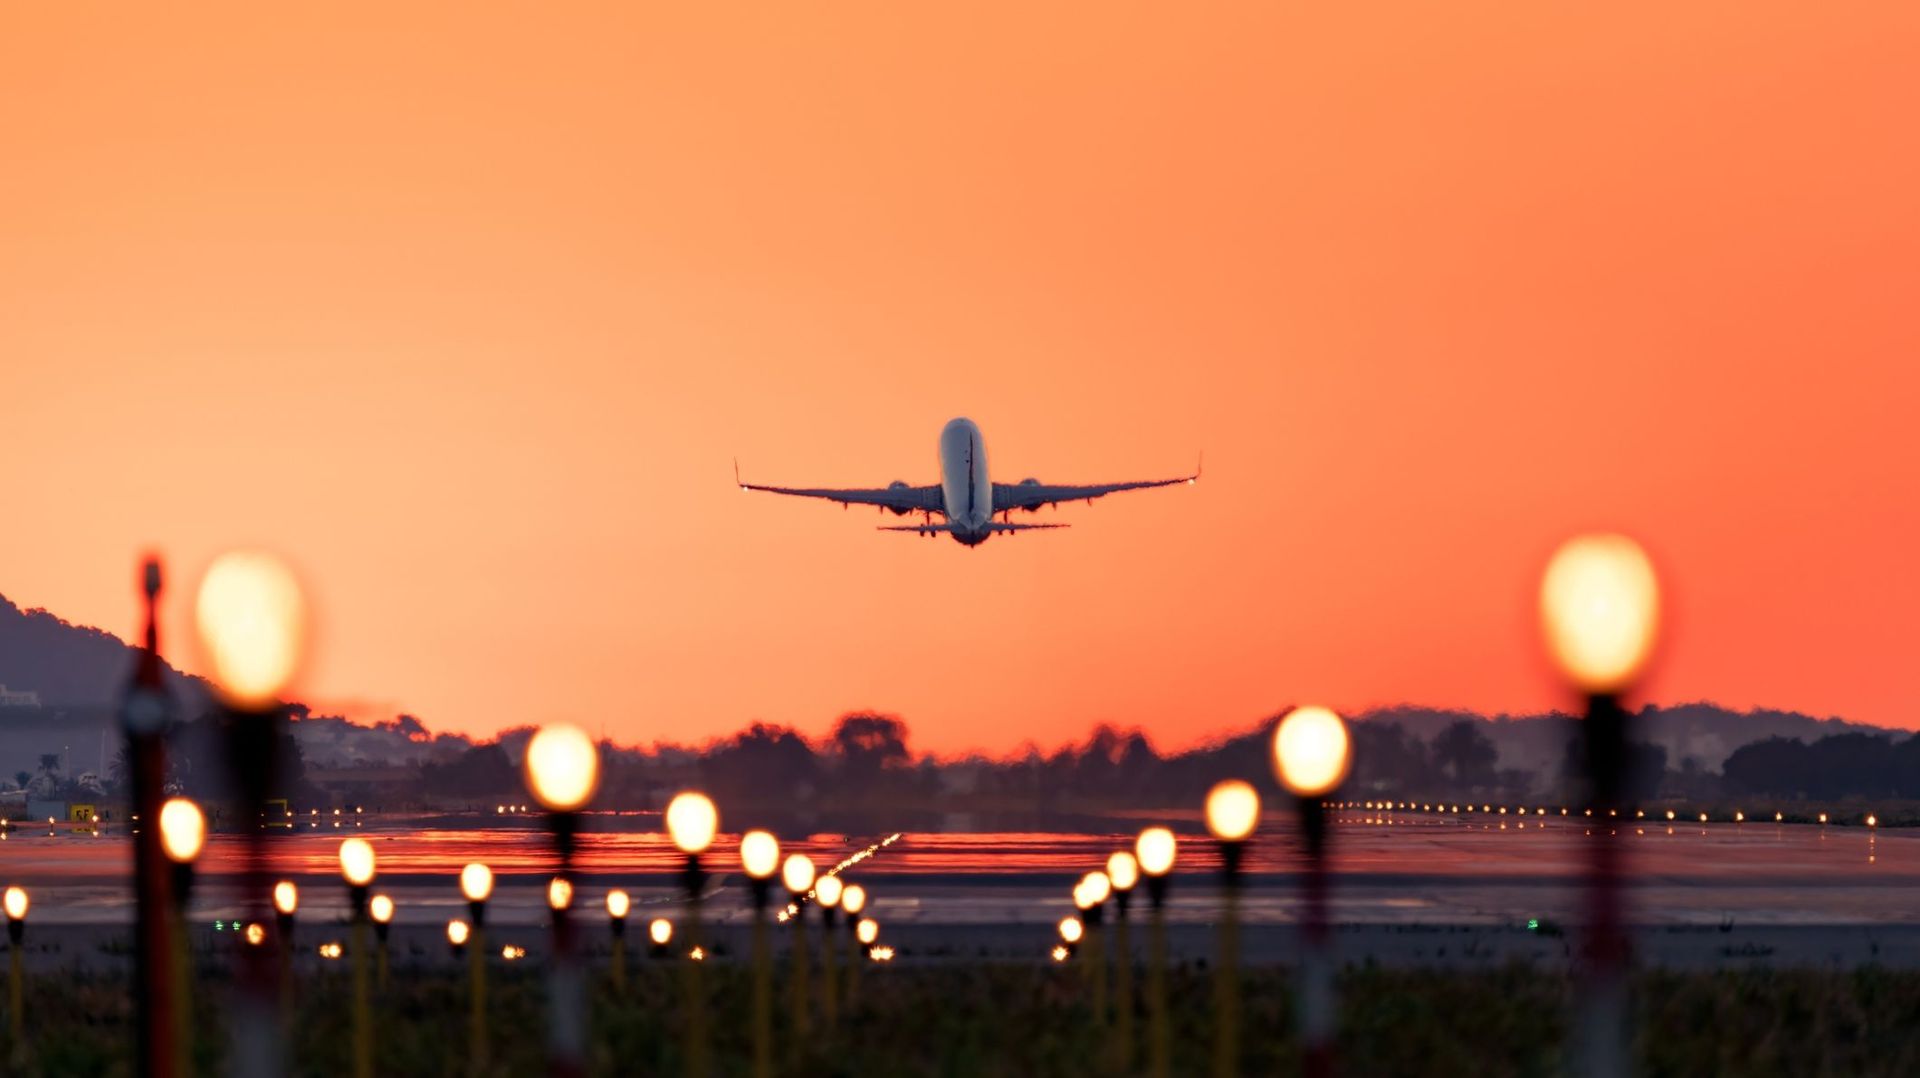 Un prix minimum des billets d’avion représenterait davantage le coup du transport et l’impact environnemental selon le ministre français des Transports.